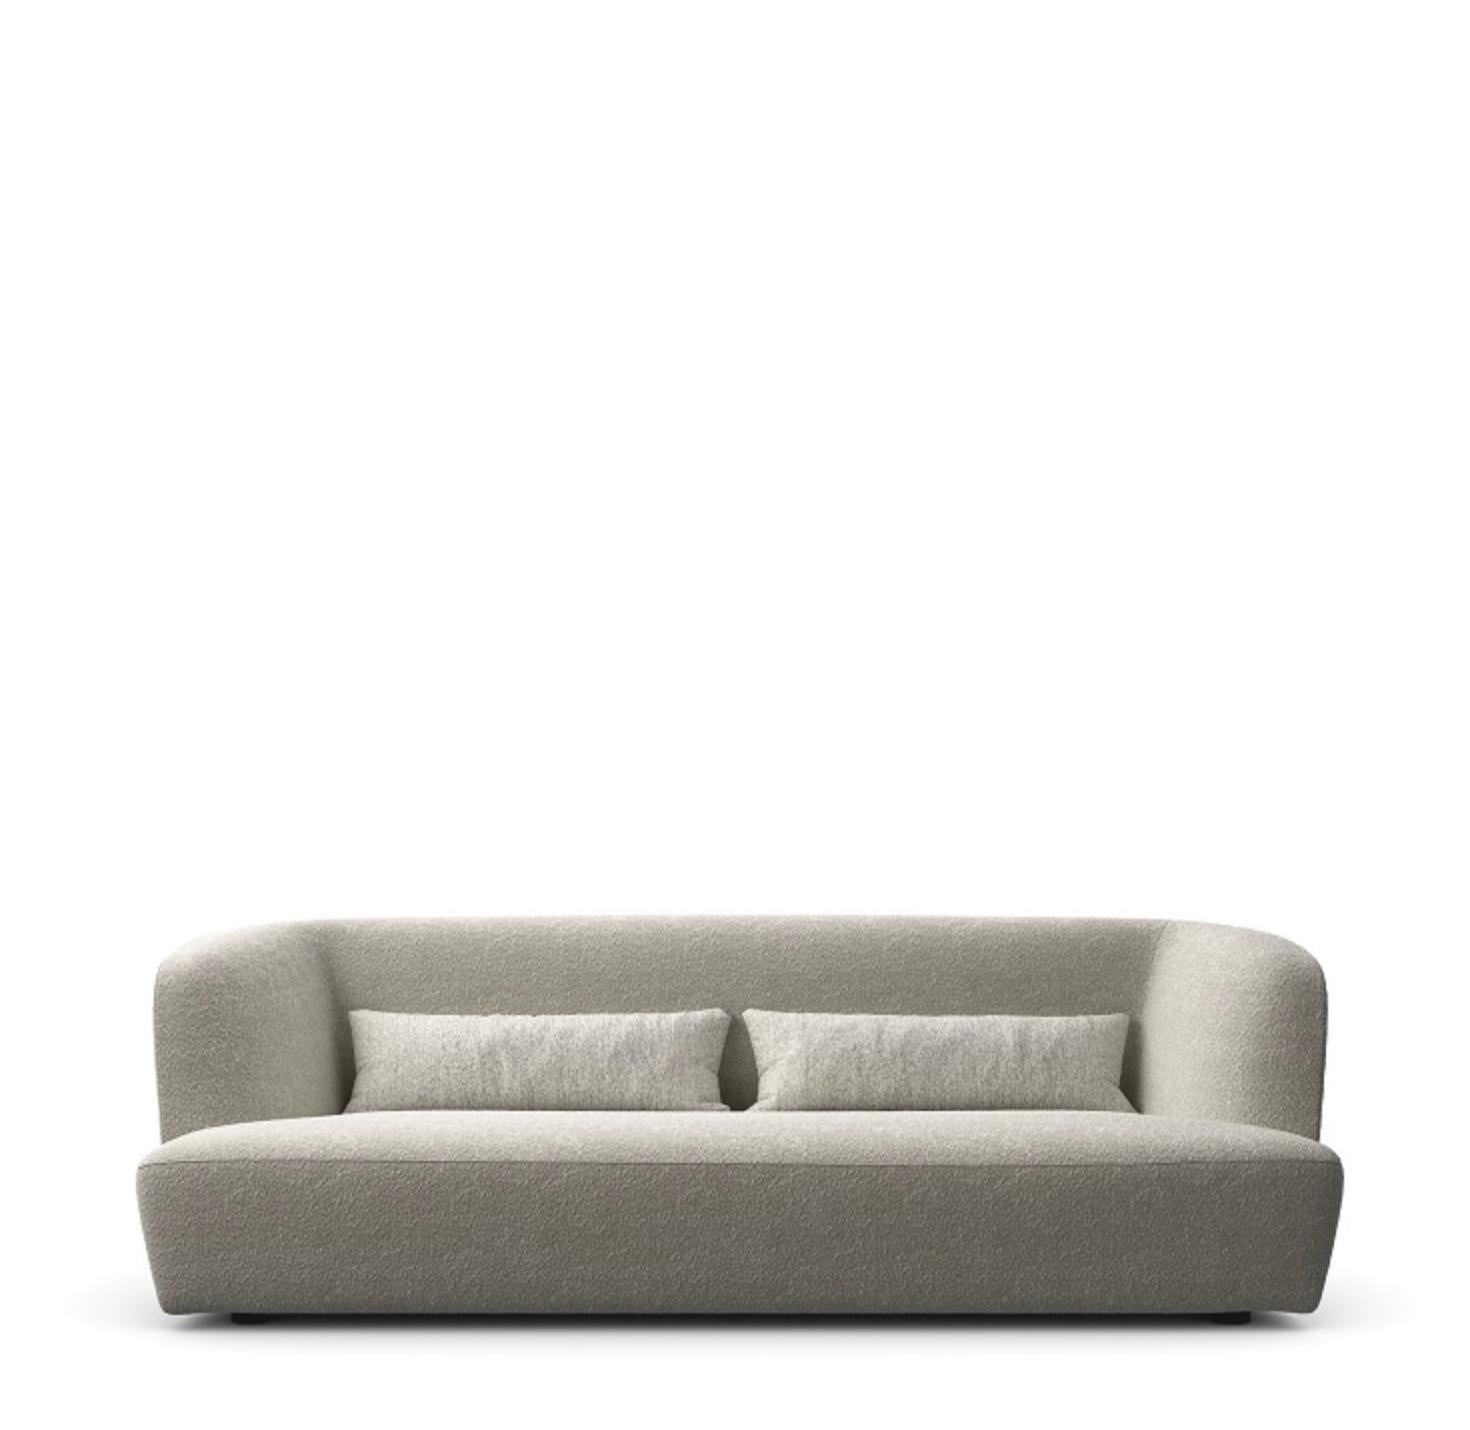 Lievore + Altherr Désile Park 'Davos' Sofa 270 für Verzelloni, Italien. Neue, aktuelle Produktion.

Das geschwungene Sofa Davos hat eine abgerundete Linie, ein elegantes und strenges Design und bietet dank der Höhe der Rückenlehne einen hohen